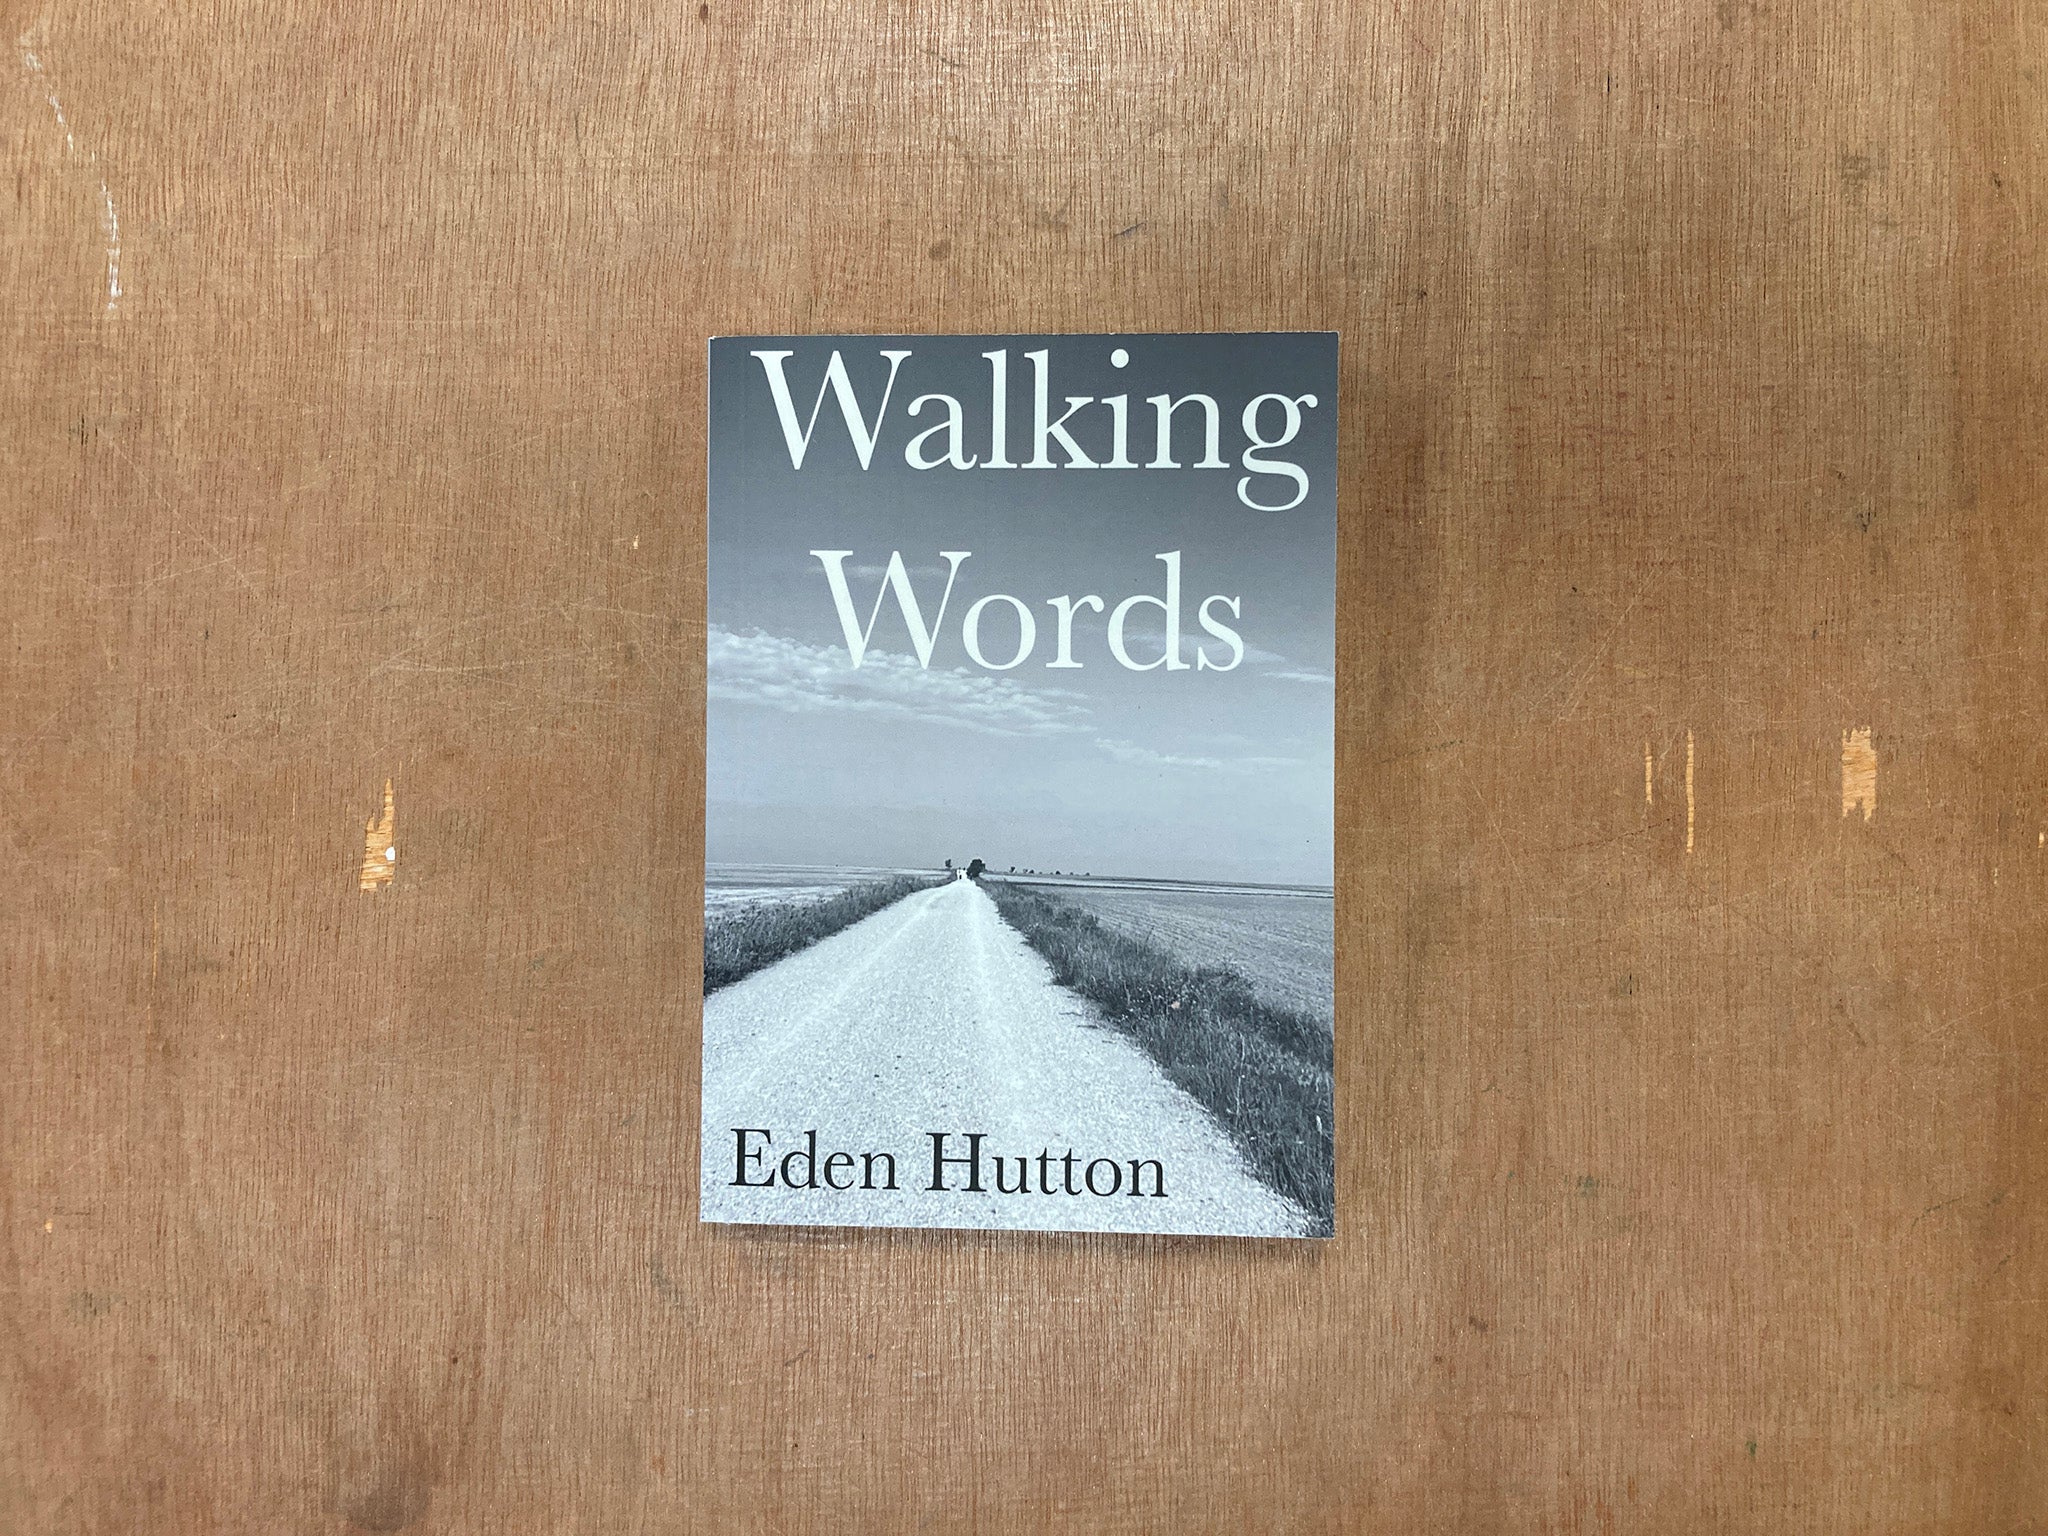 WALKING WORDS by Eden Hutton